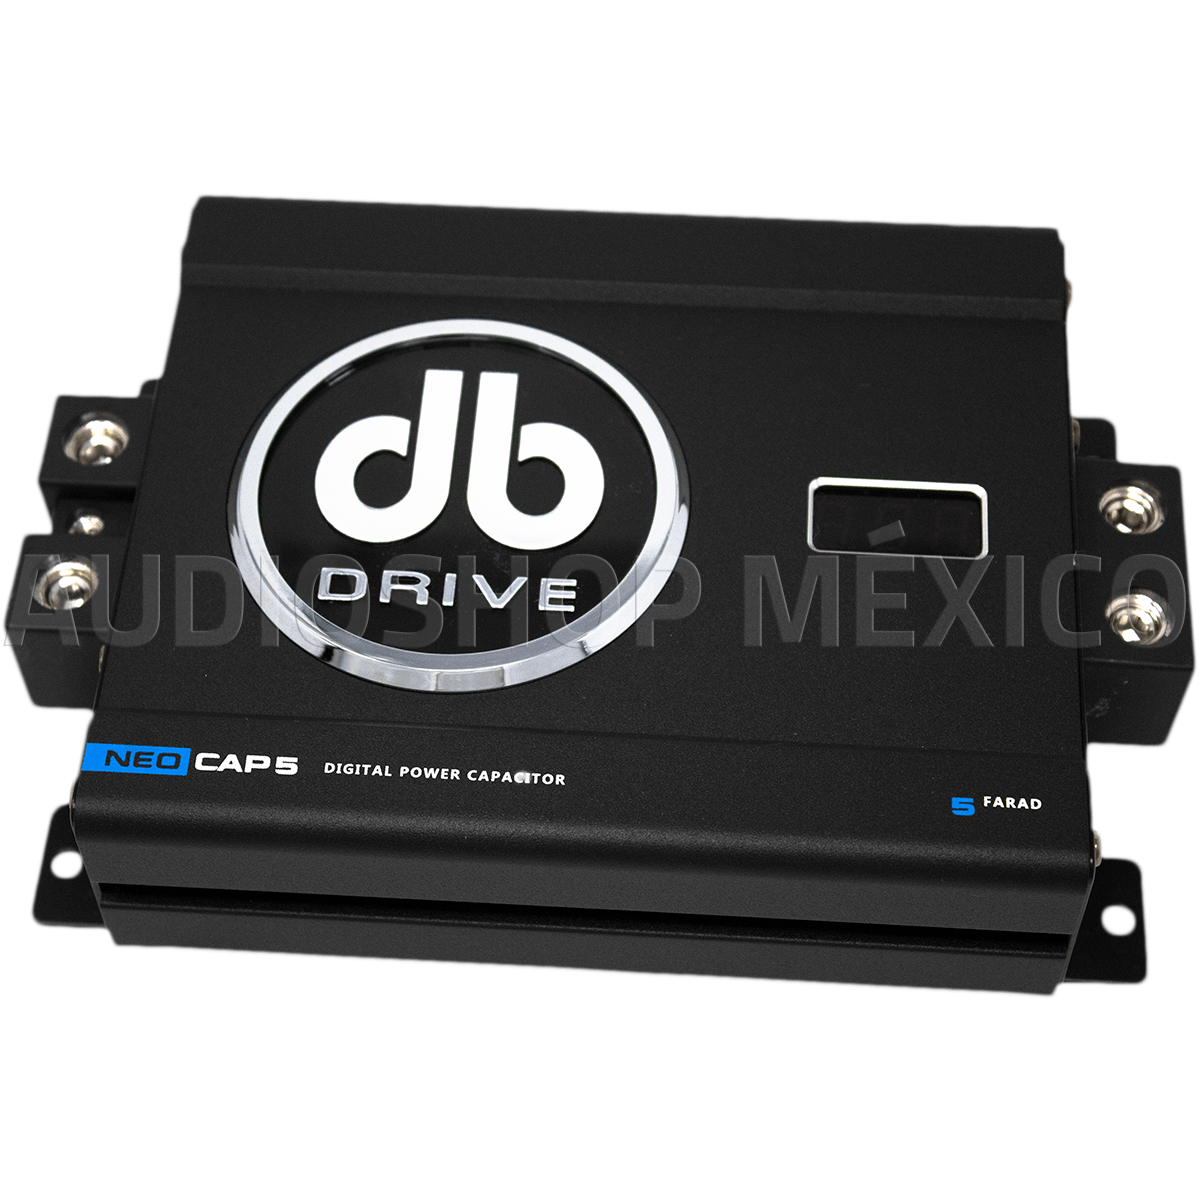 Capacitor de potencia Digital DB Drive NEOCAP5 5 Faradios 12-24 VDC Tamaño compacto con medidor de voltaje